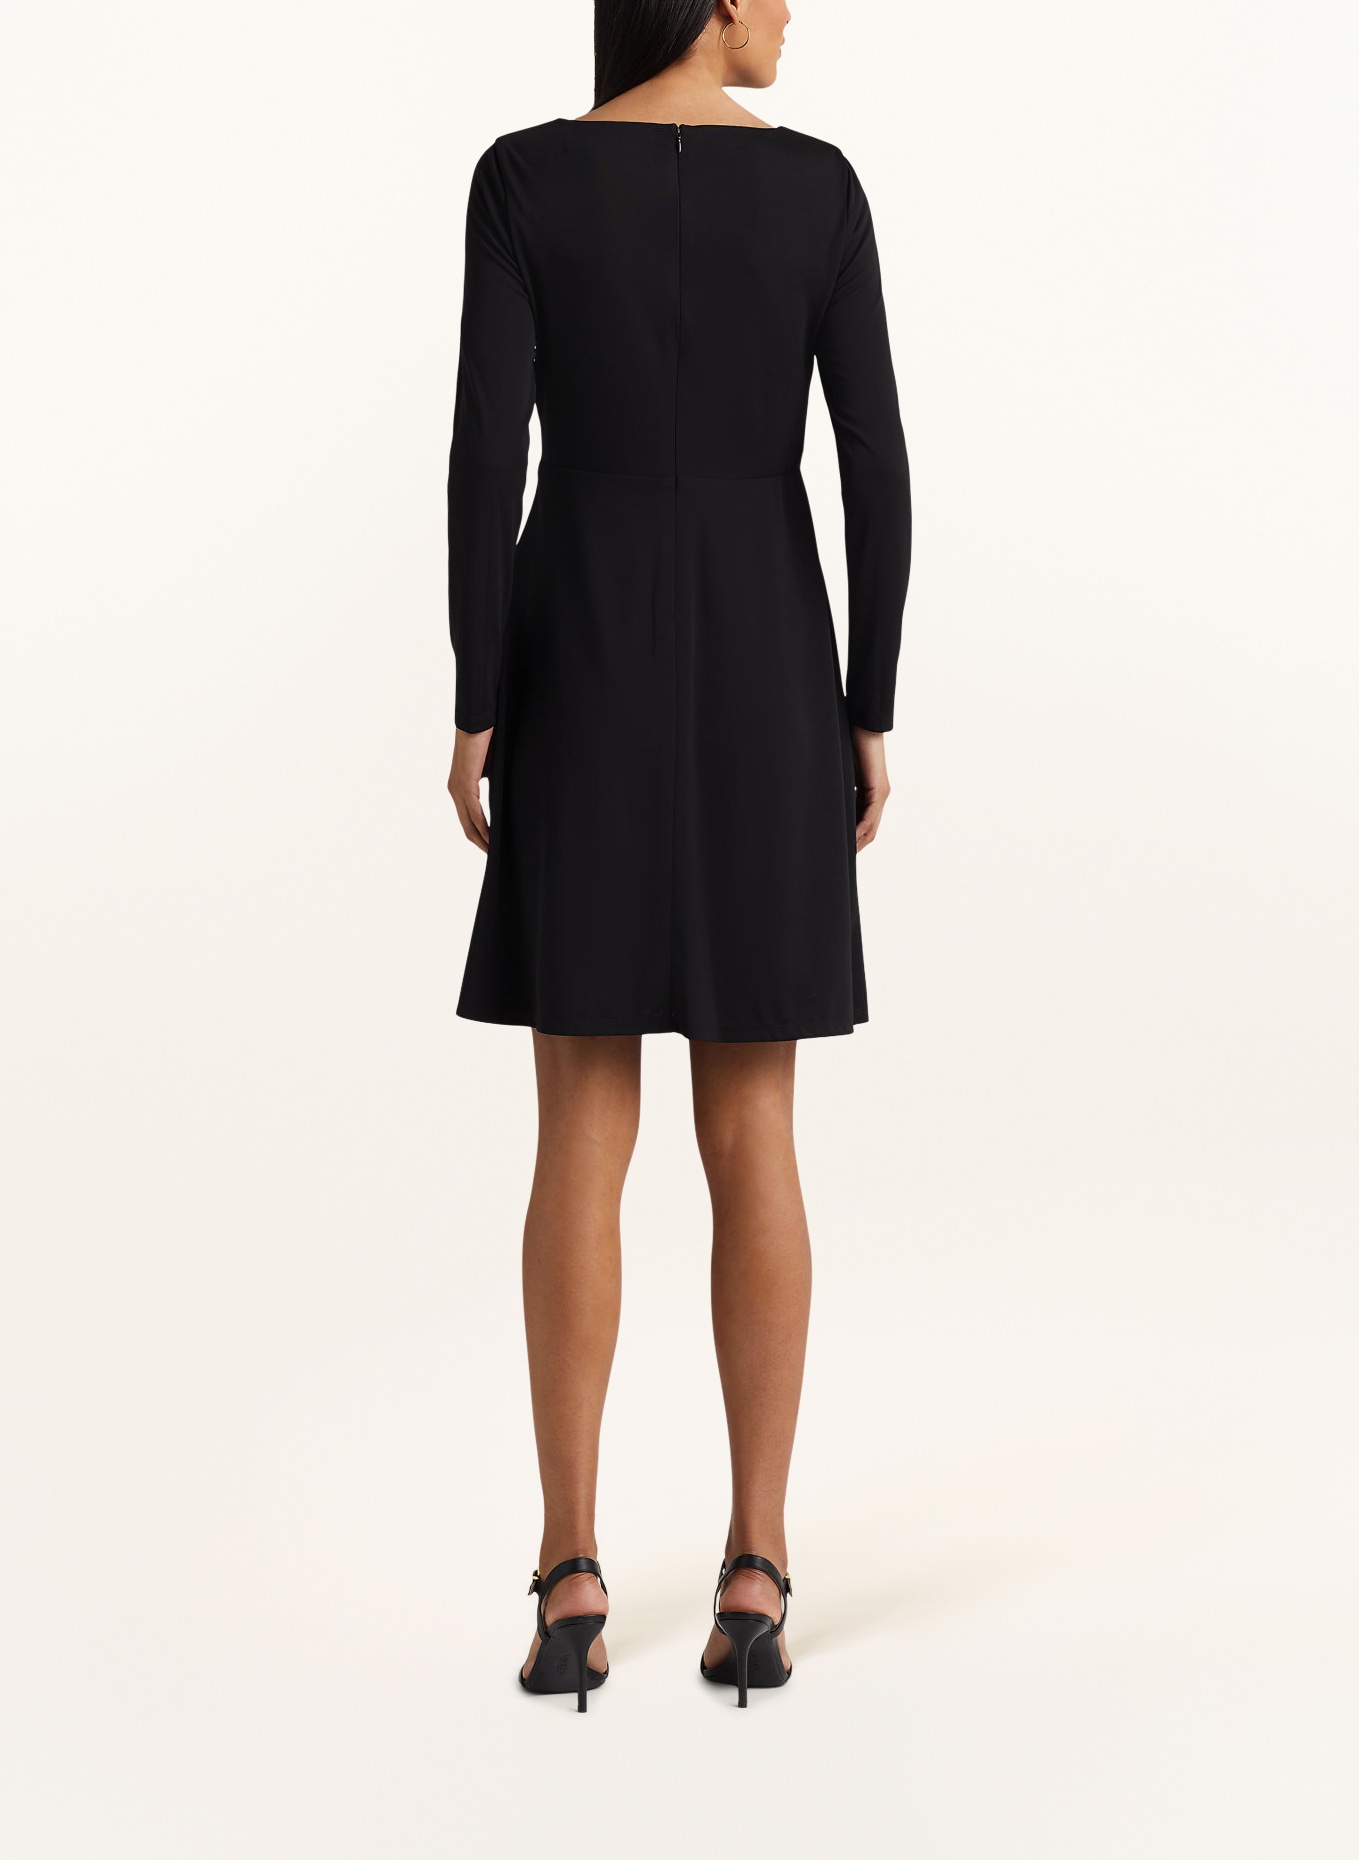 LAUREN RALPH LAUREN Jersey dress, Color: BLACK (Image 3)